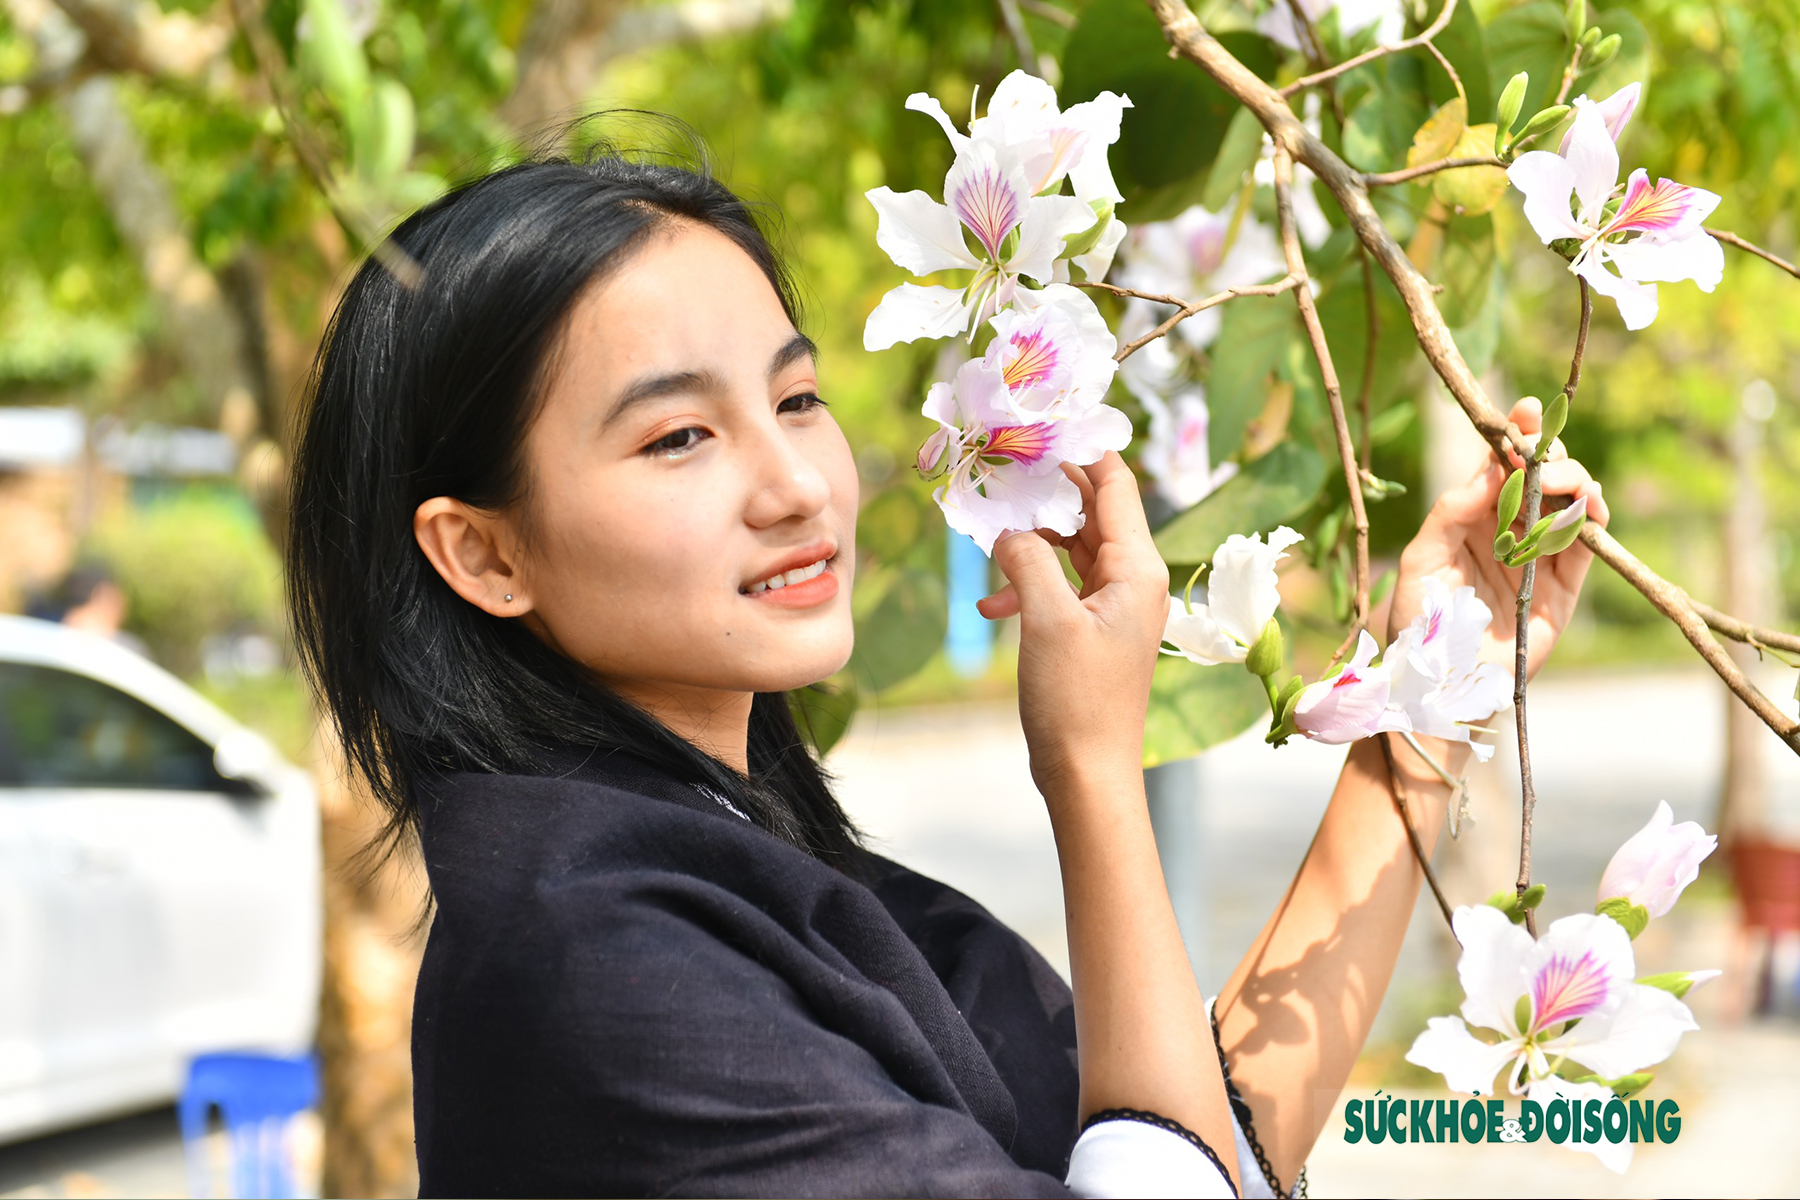 Thiếu nữ Thái ở Điện Biên dịu dàng giữa rừng hoa ban tuyệt đẹp - Ảnh 9.